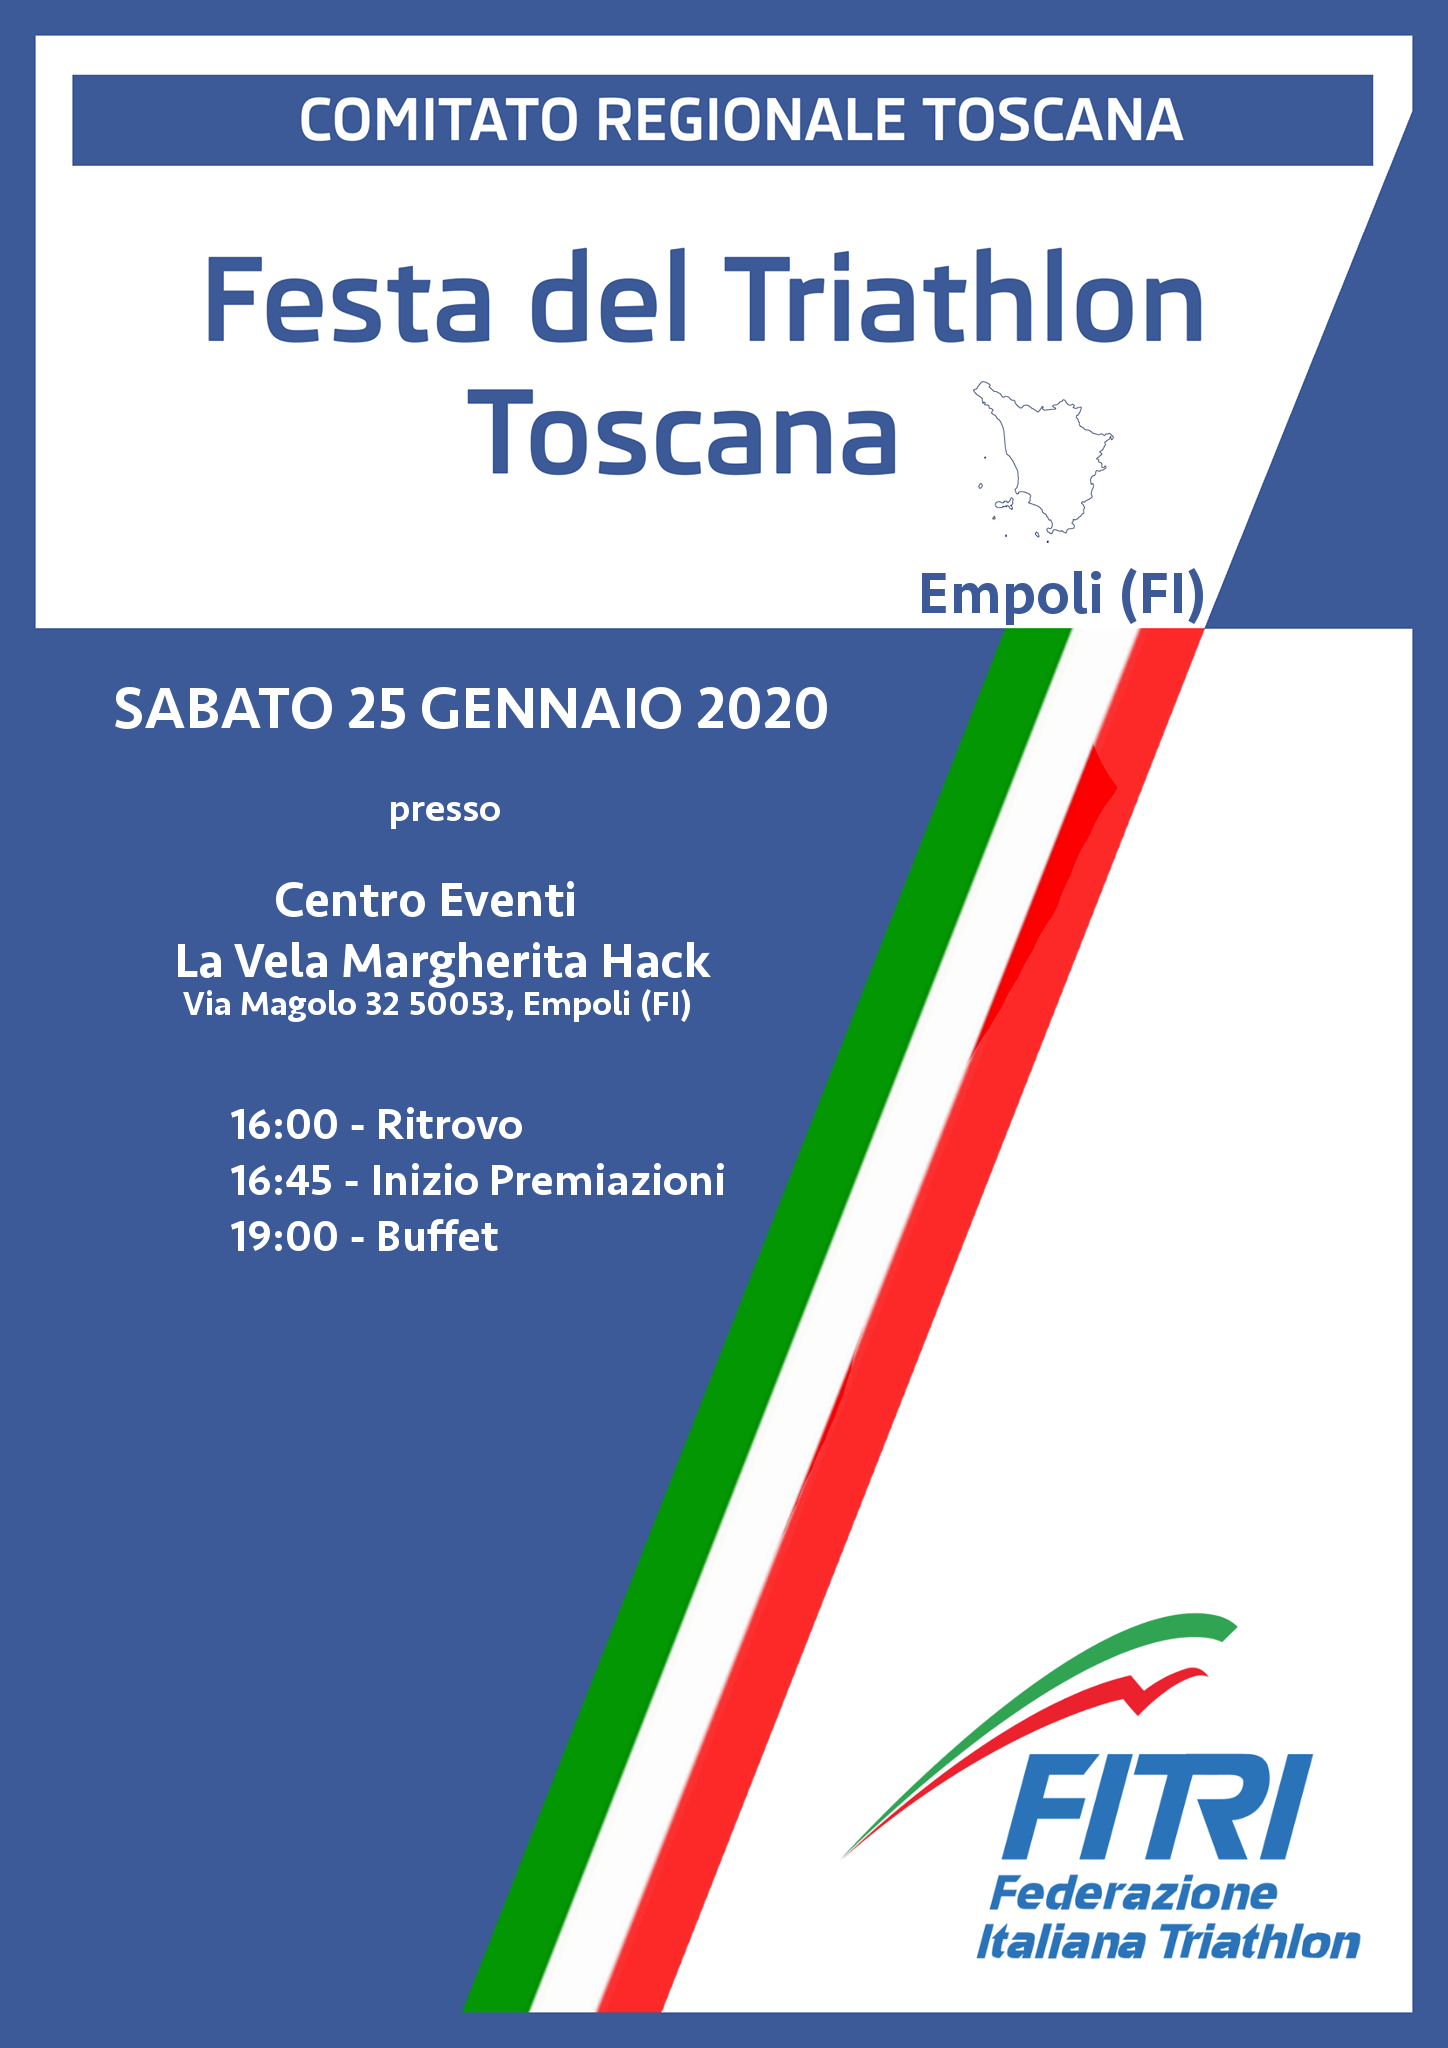 Classifiche Finale 2019 & Festa del Triathlon Toscana